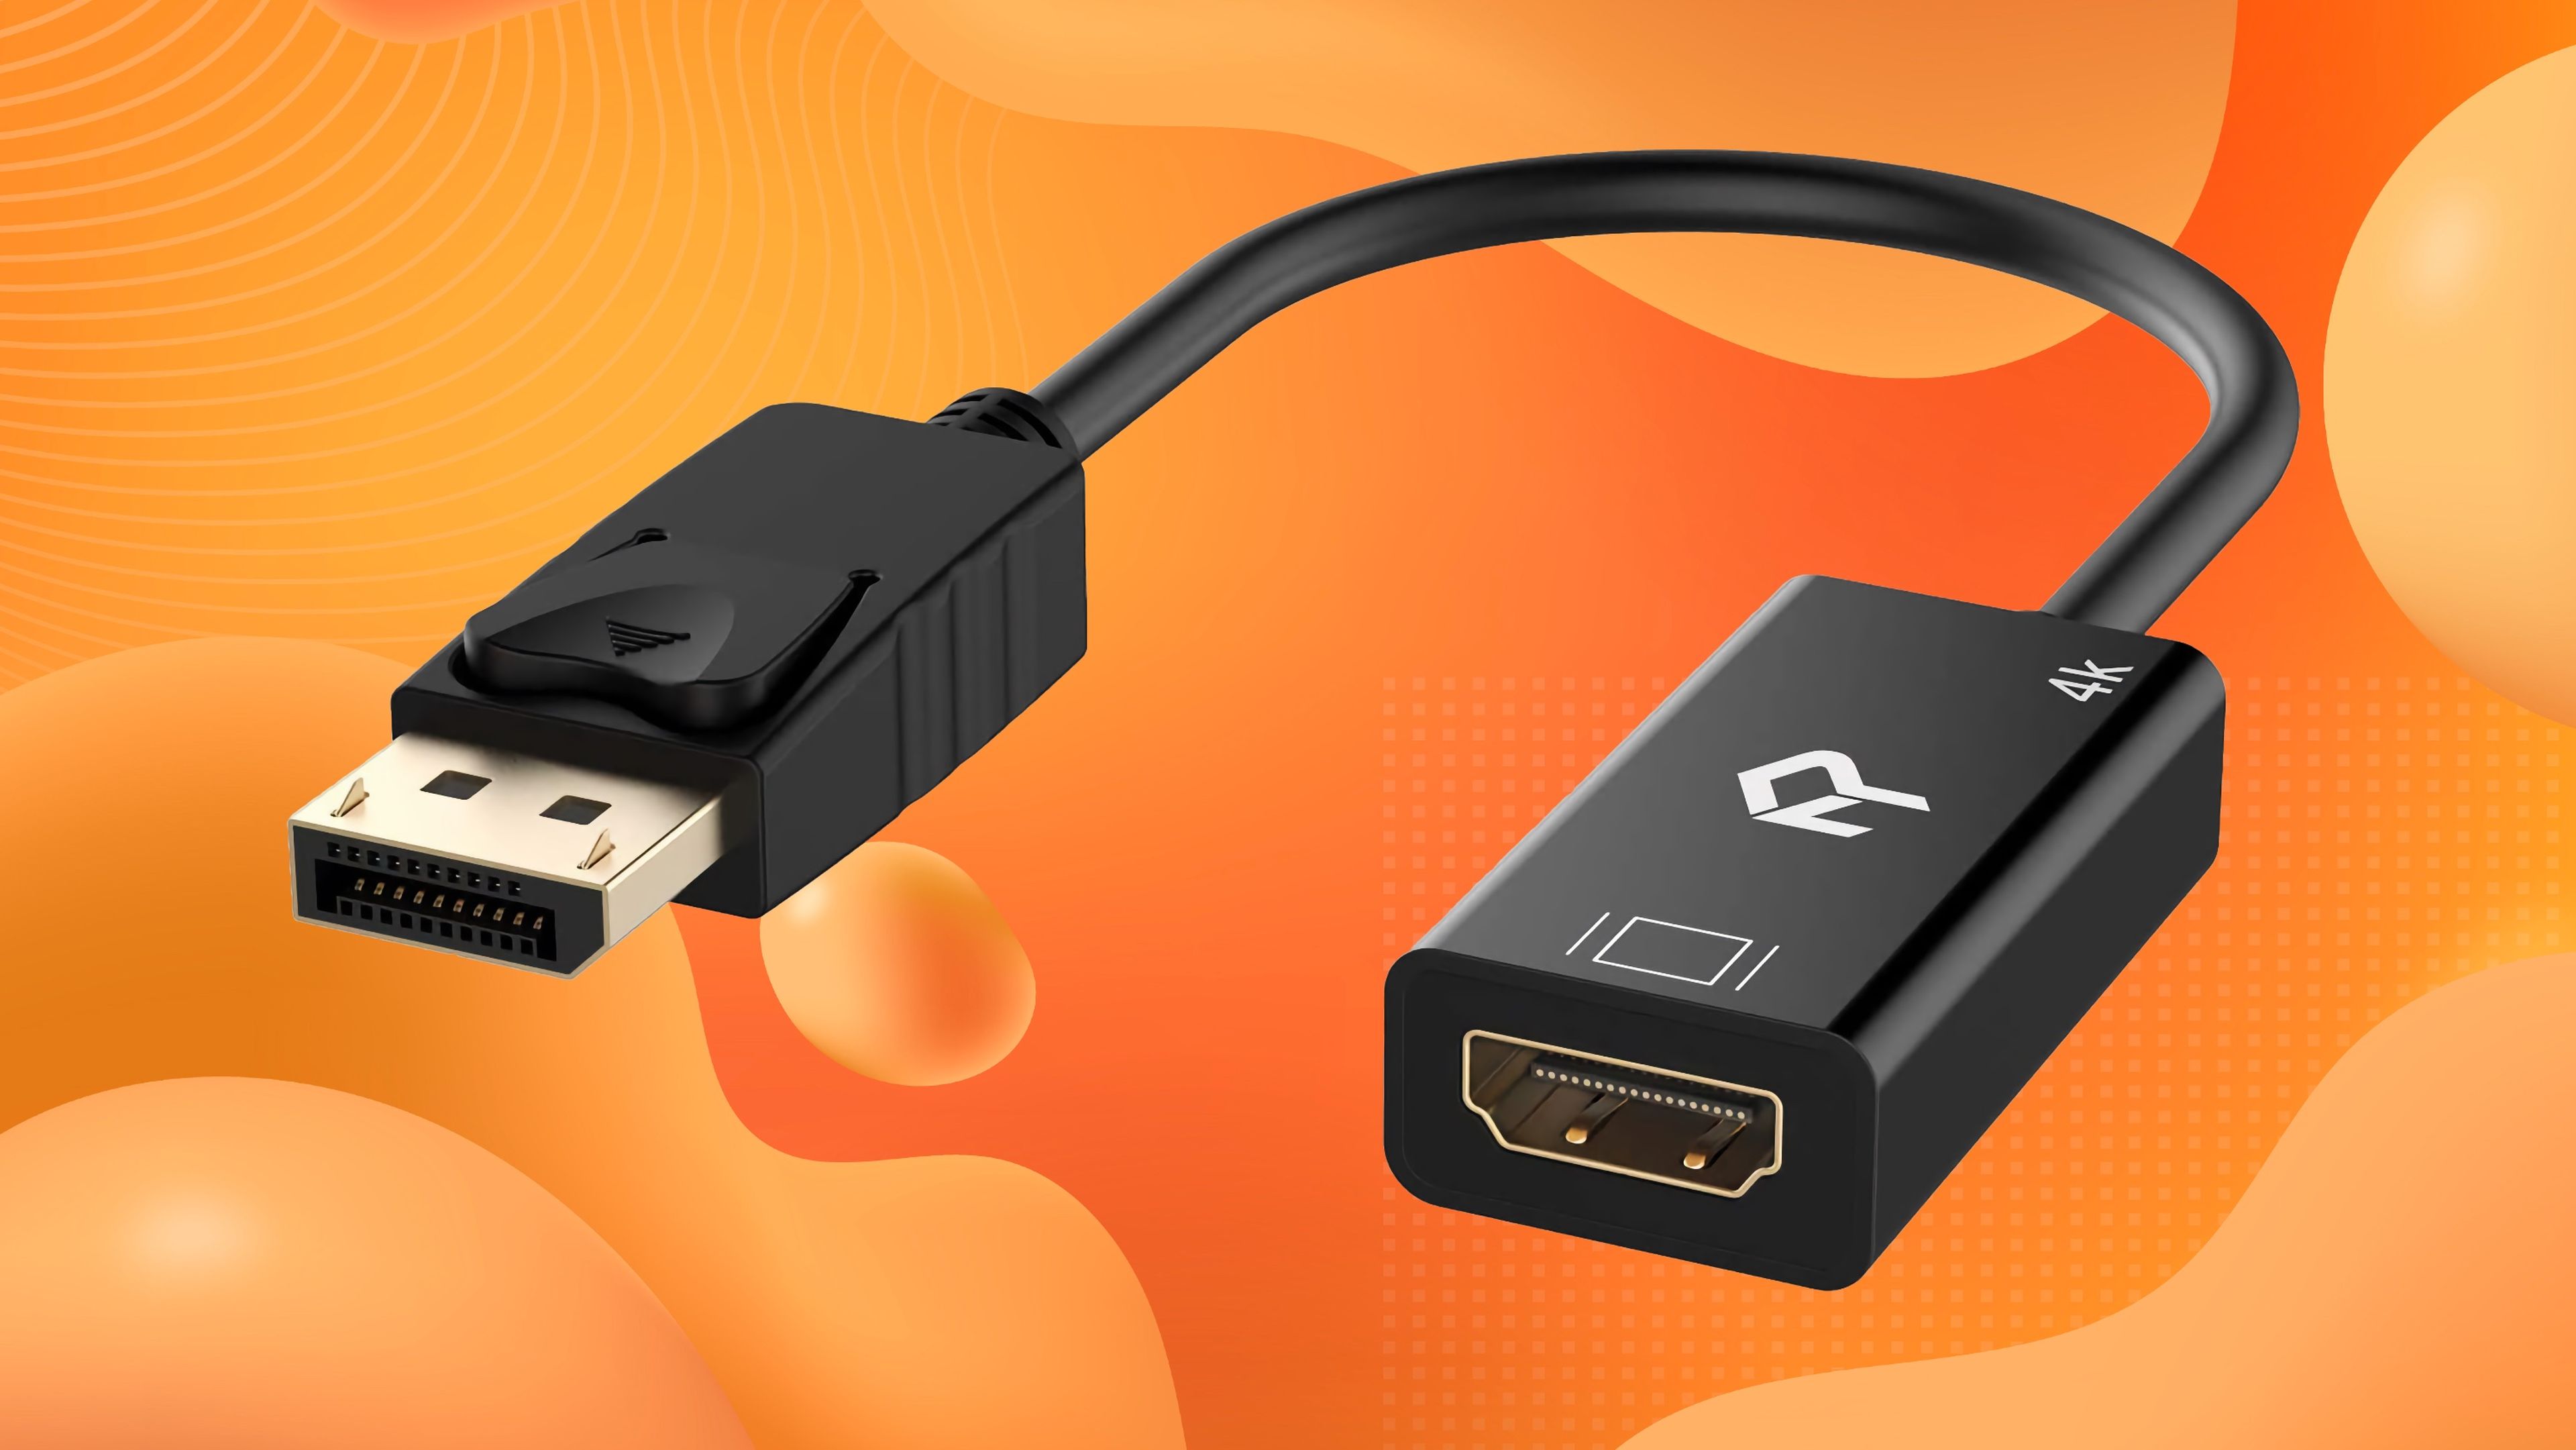 DisplayPort y adaptador HDMI: cosas que debes saber y cuál usar